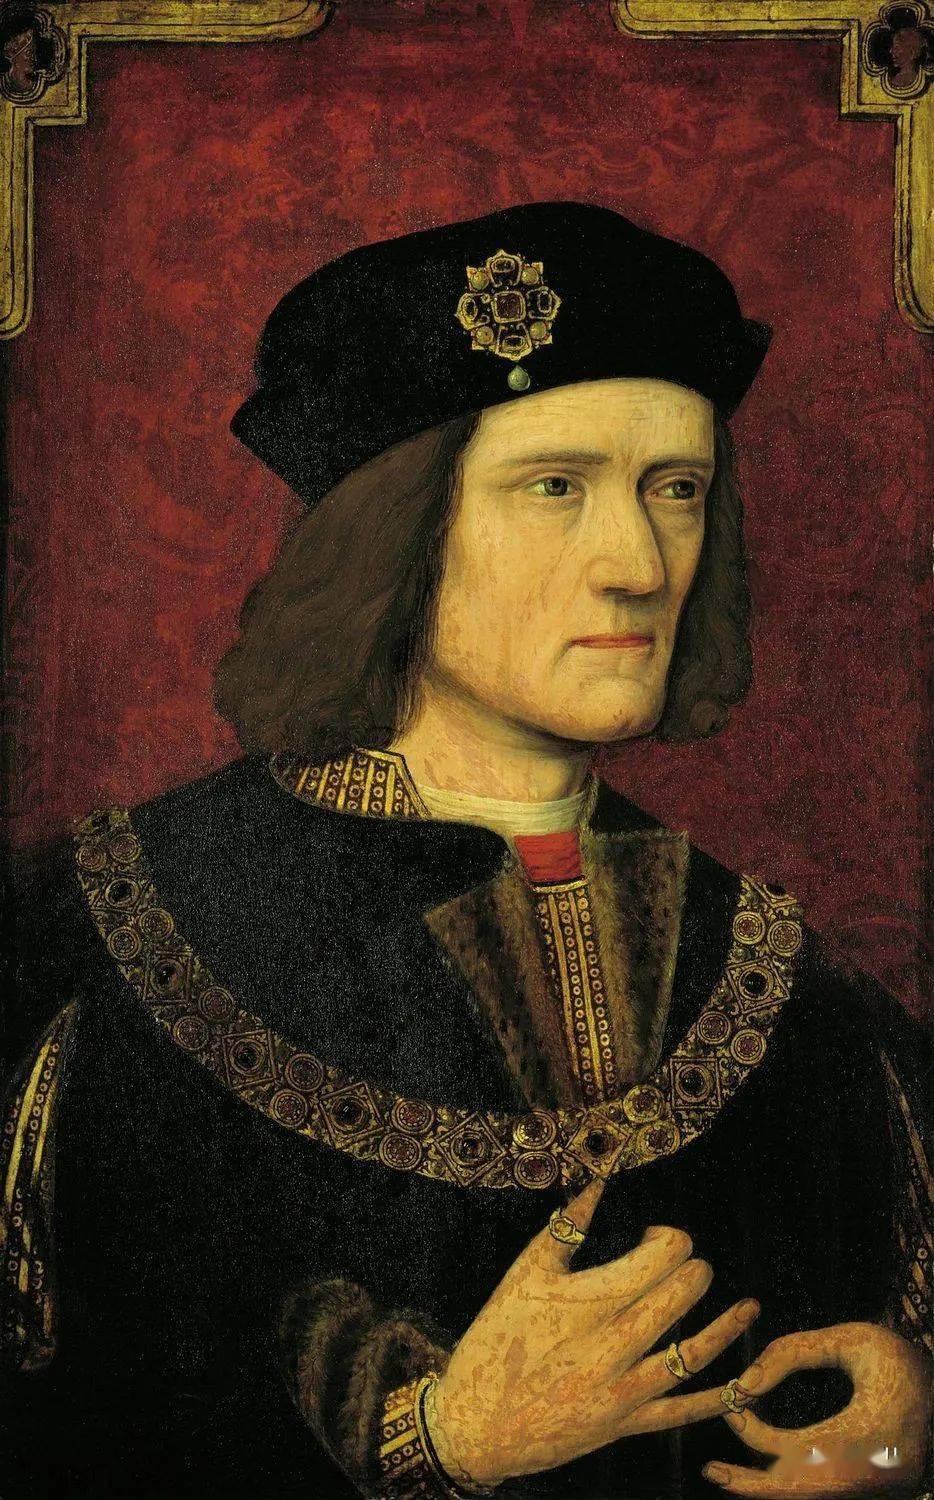 先有1483年爱德华三世第五子白金汉公爵托马斯起兵造反,后有1485年